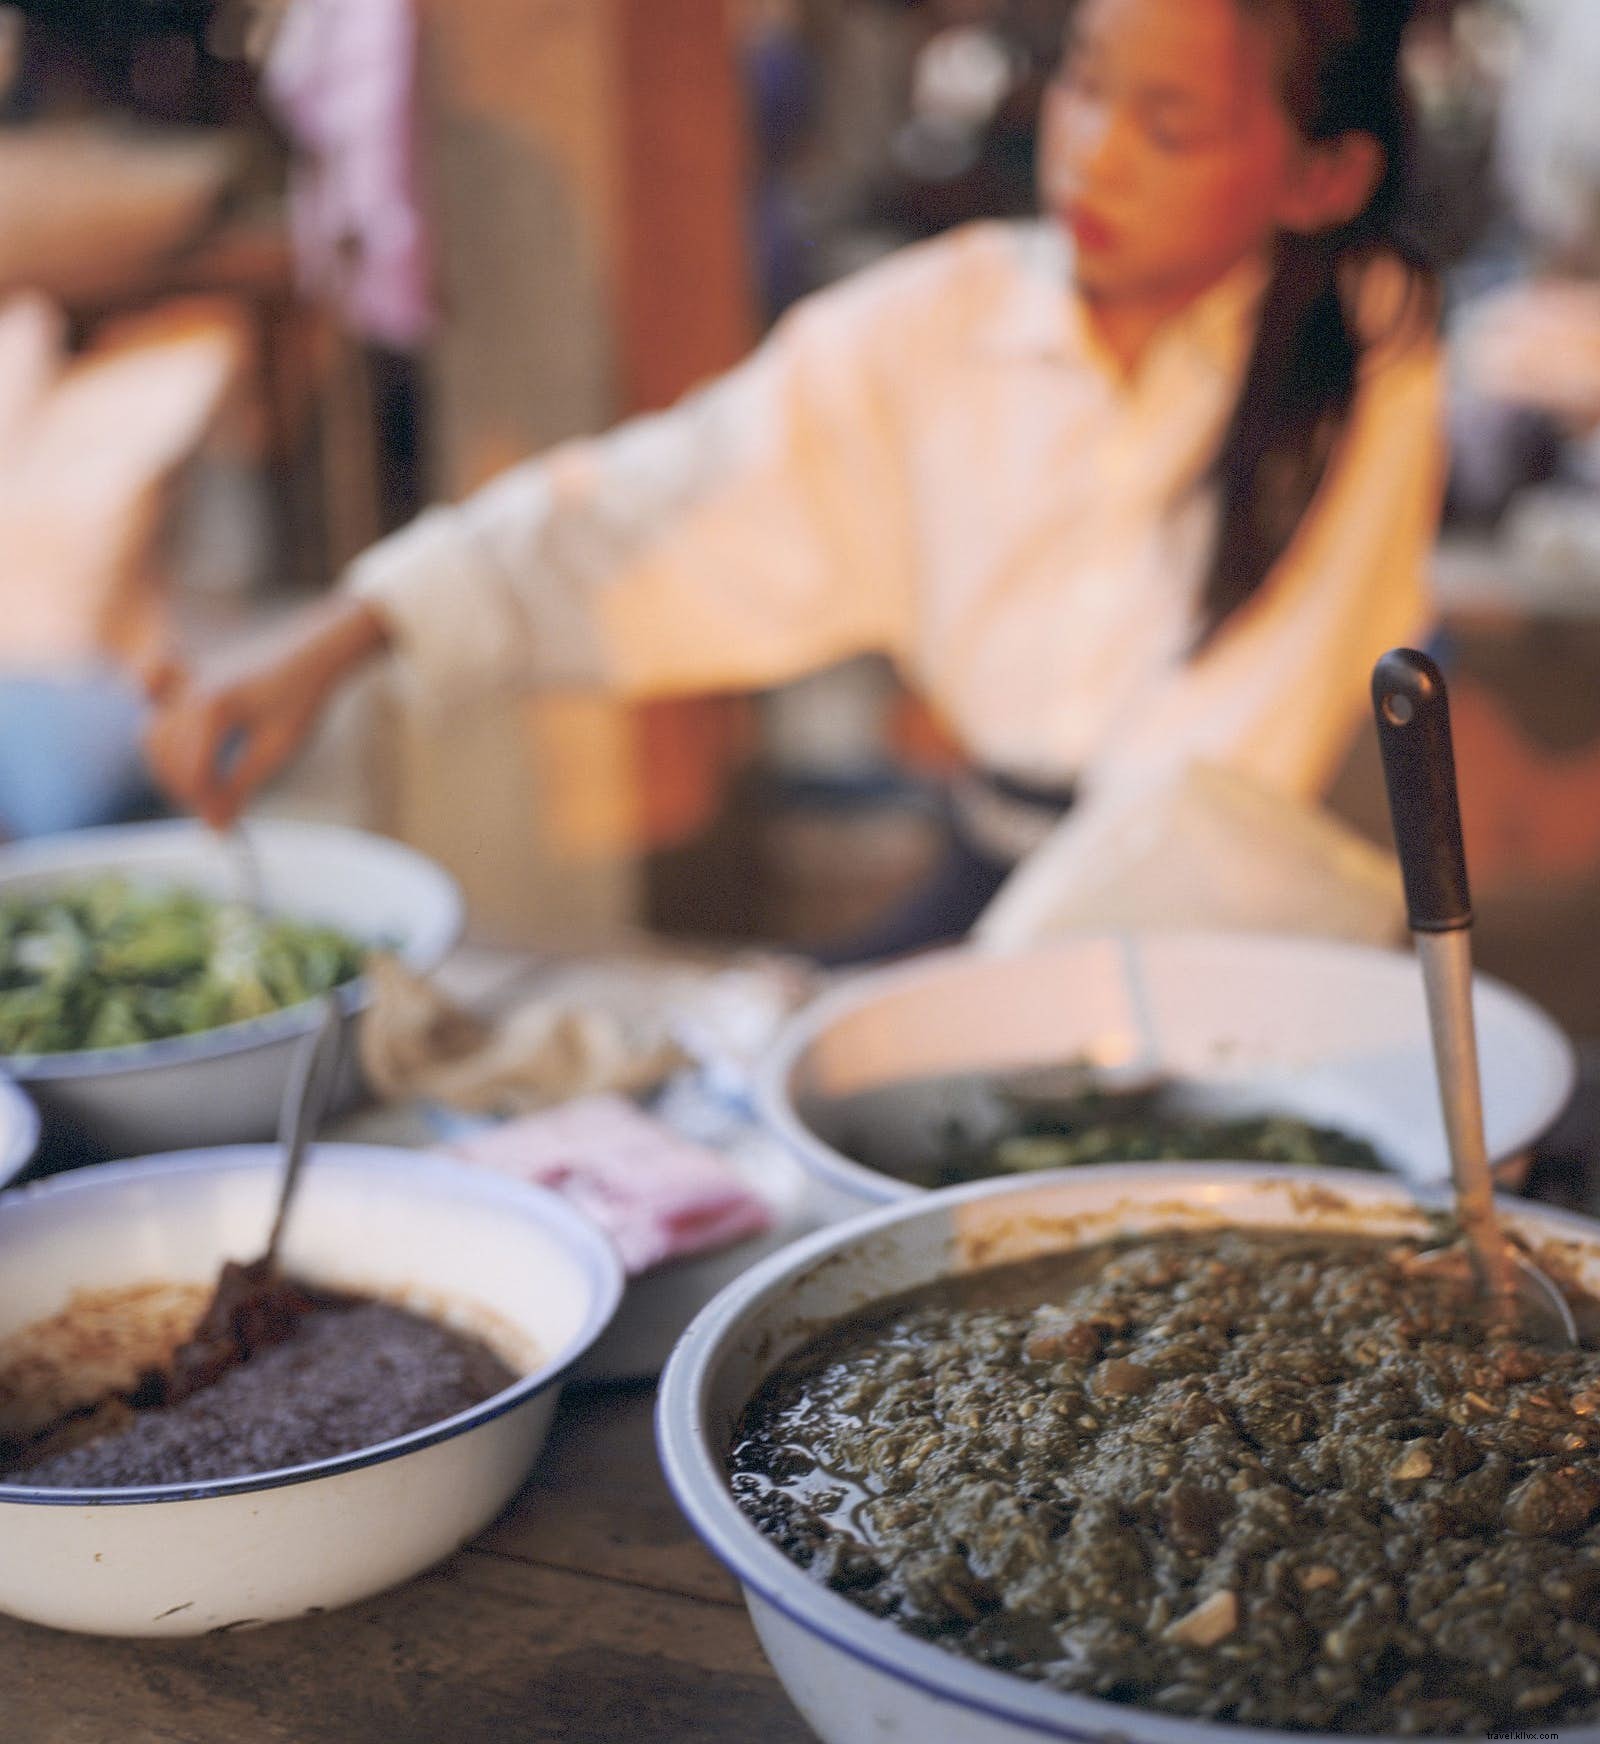 Um diferencial global:nossas inesquecíveis experiências gastronômicas compartilhadas 